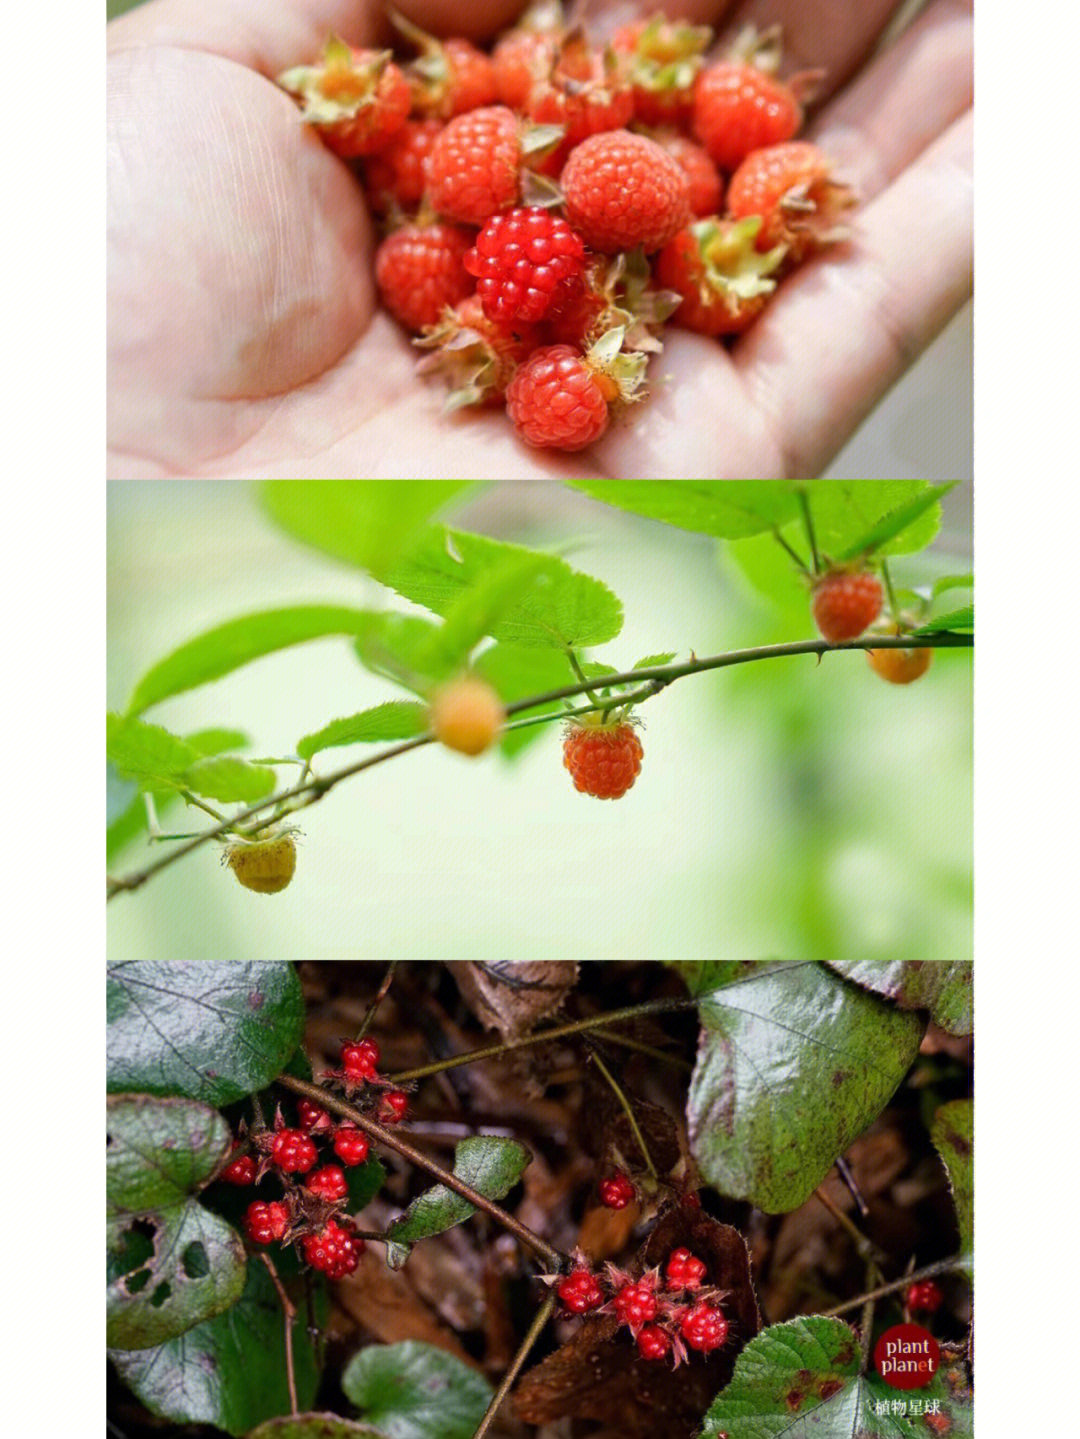 你那边秋冬山里也有树莓或覆盆子那样的果吗